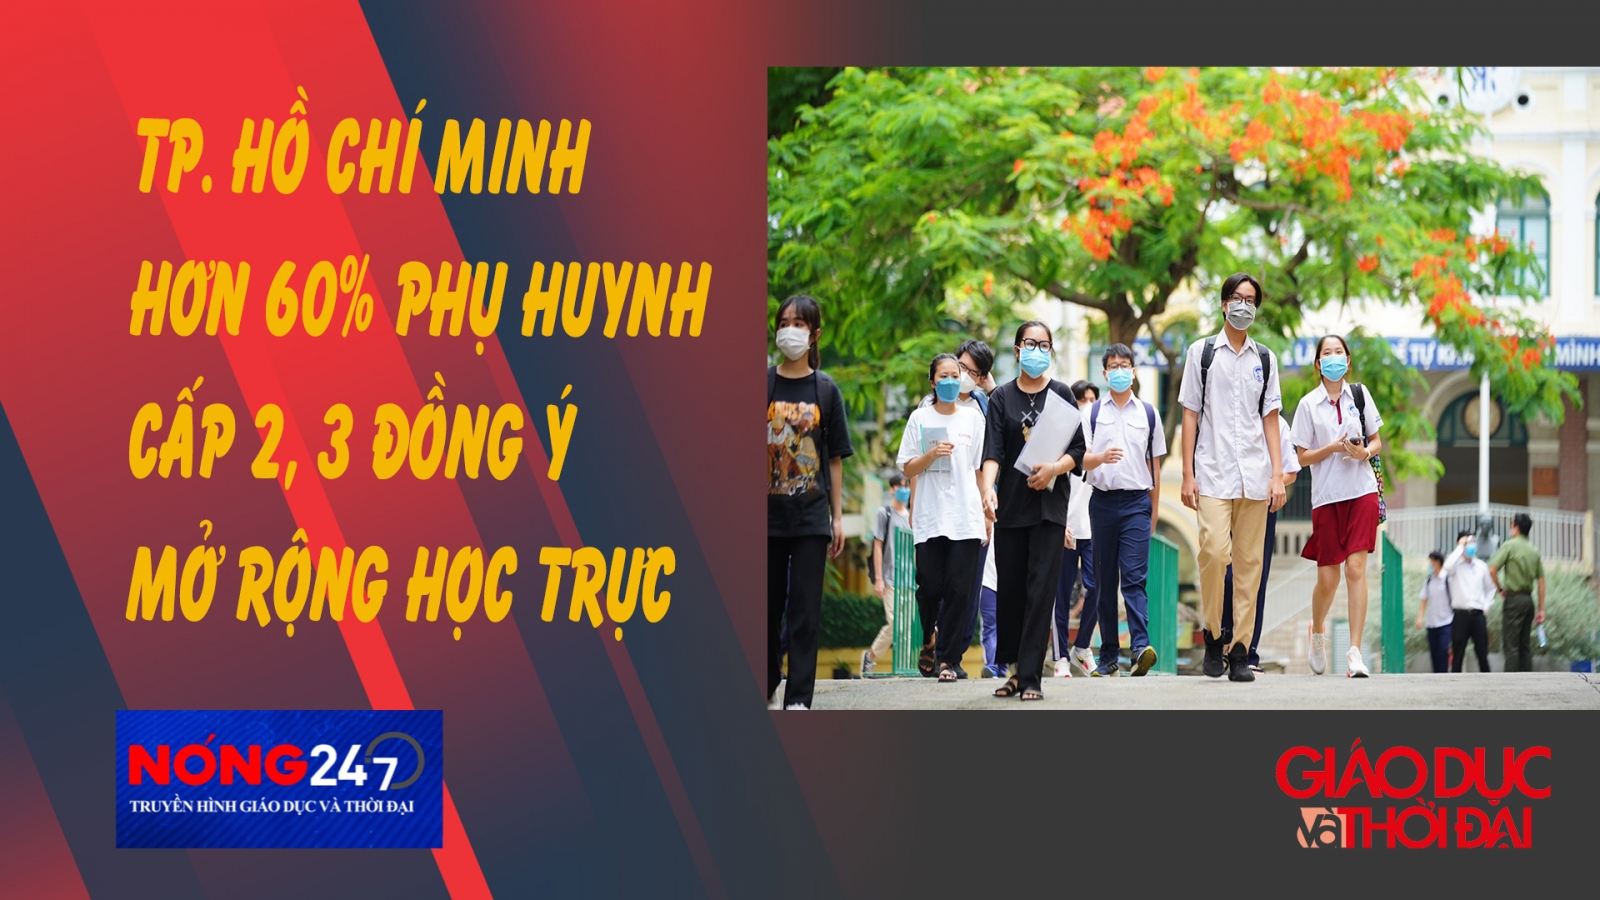 NÓNG 247 | TP. Hồ Chí Minh phụ huynh cấp 2, 3 đồng ý mở rộng học trực tiếp